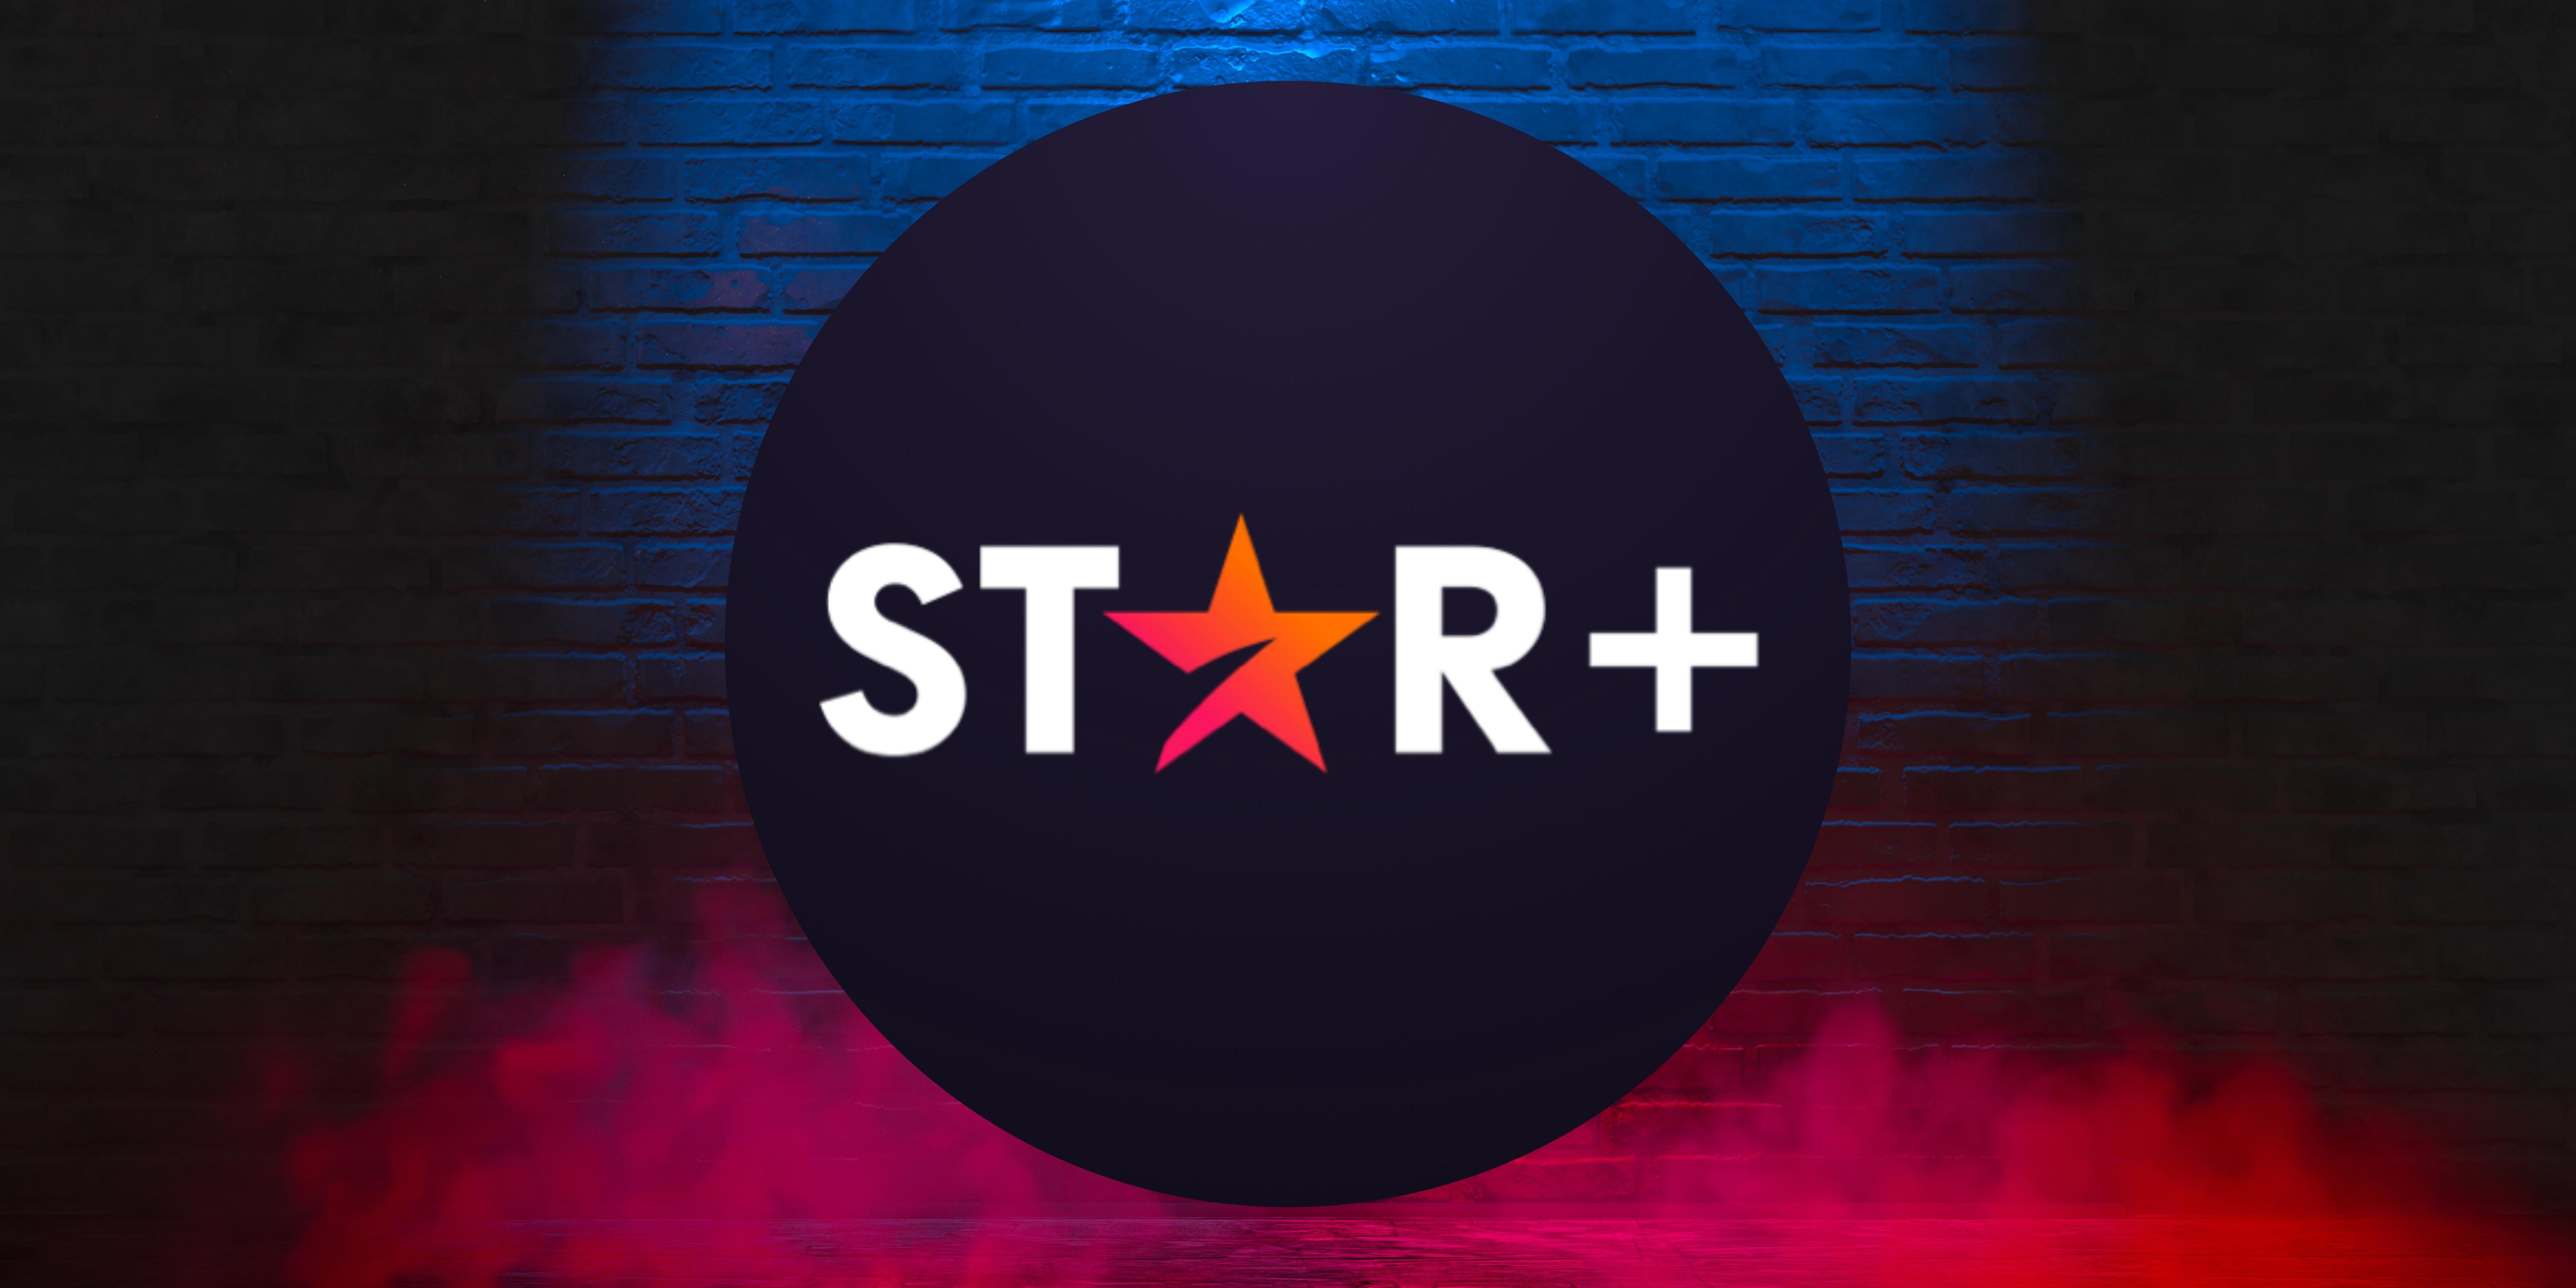 Star+ | 6 Months Warranty